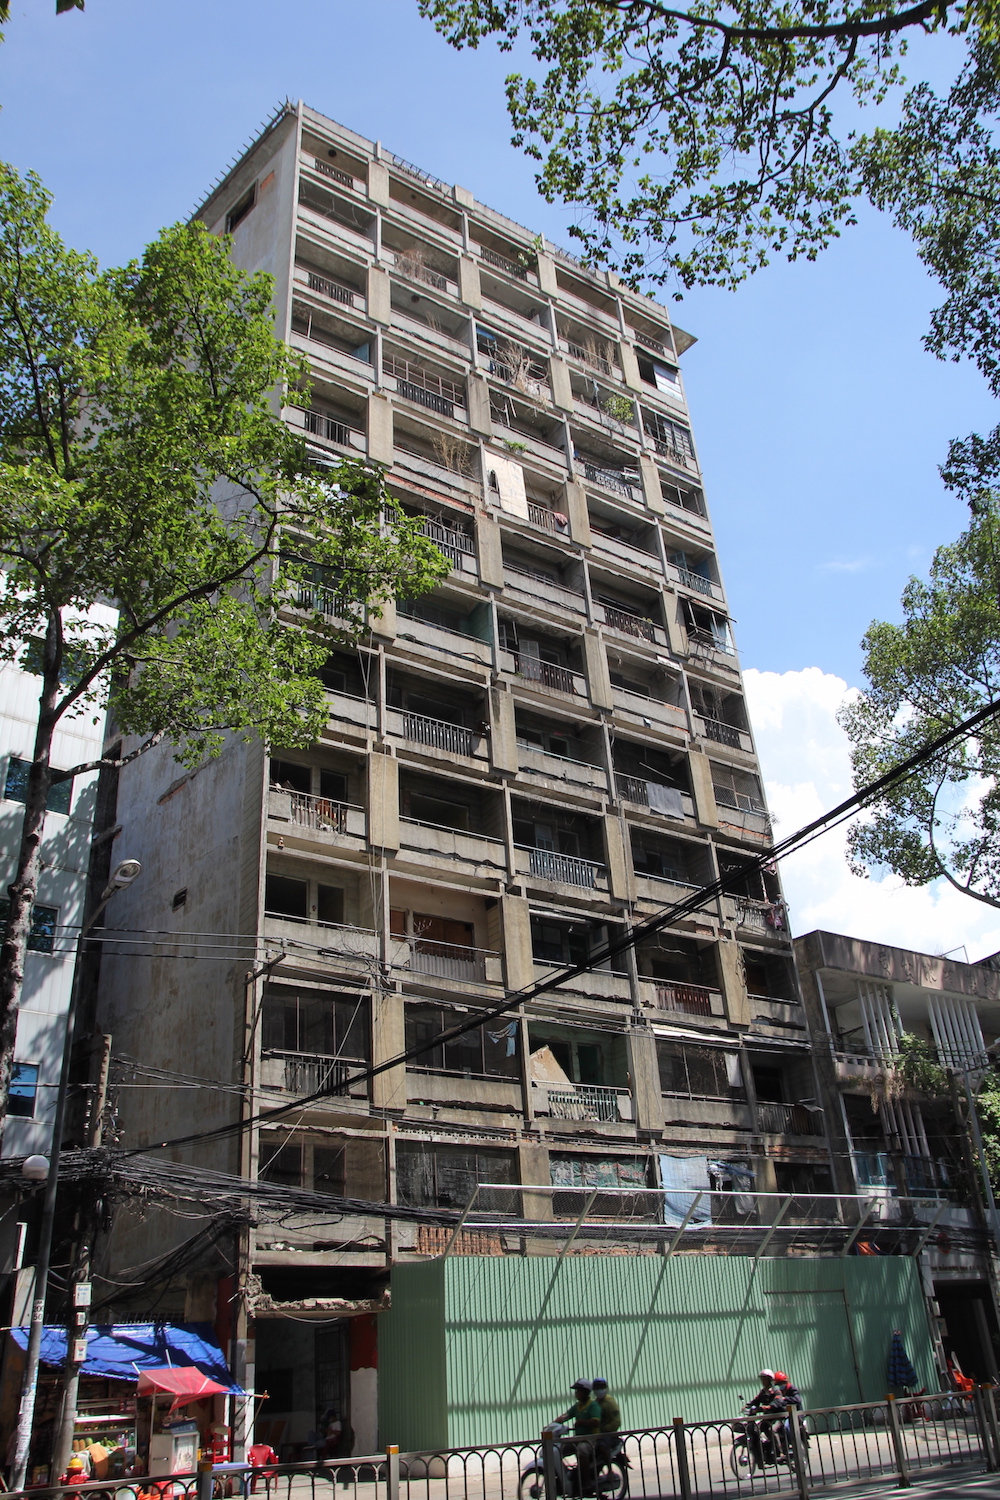 , Chung cư 727 Trần Hưng Đạo… từng được mệnh danh là một trong những chung cư “hoang tàn nhất Sài Gòn”